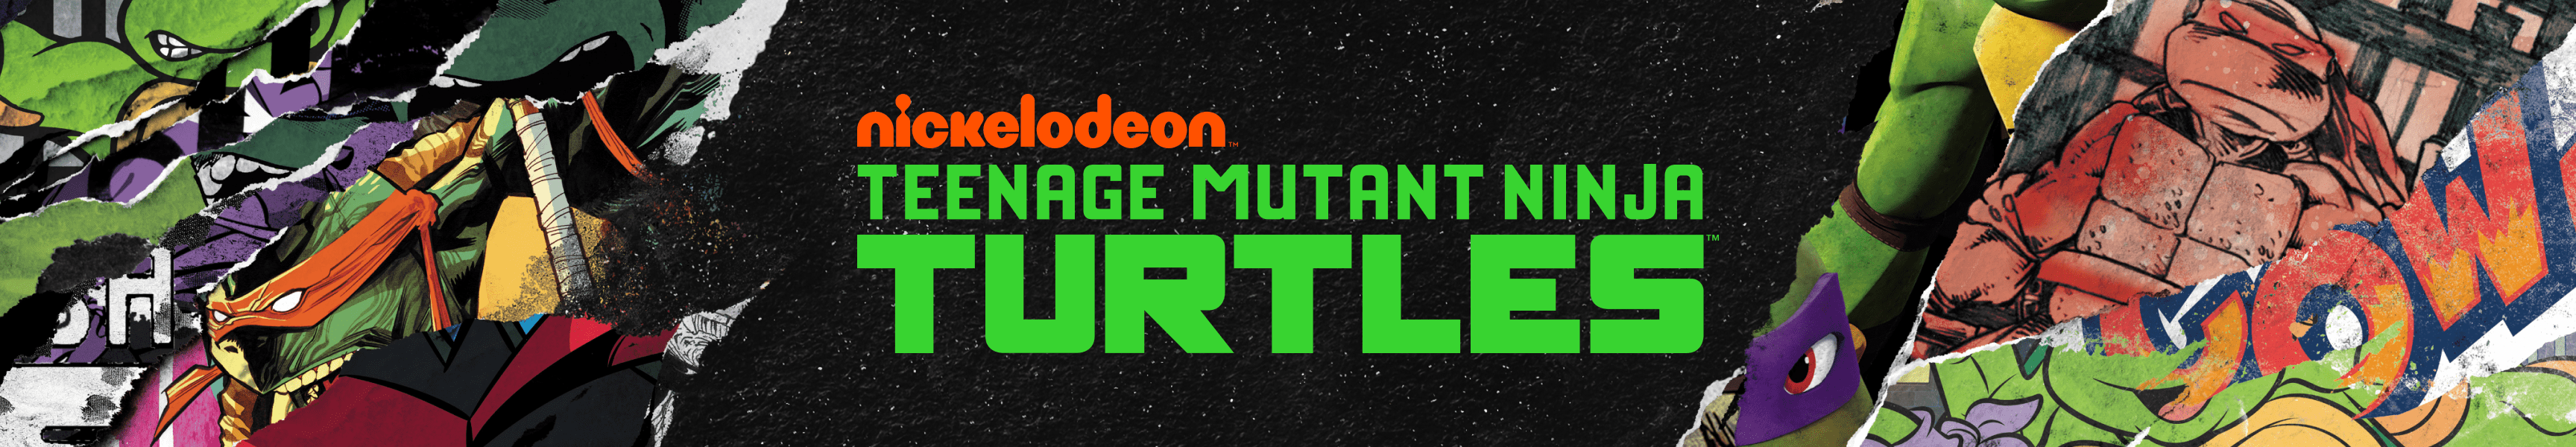 Teenage Mutant Ninja Turtles Hüte